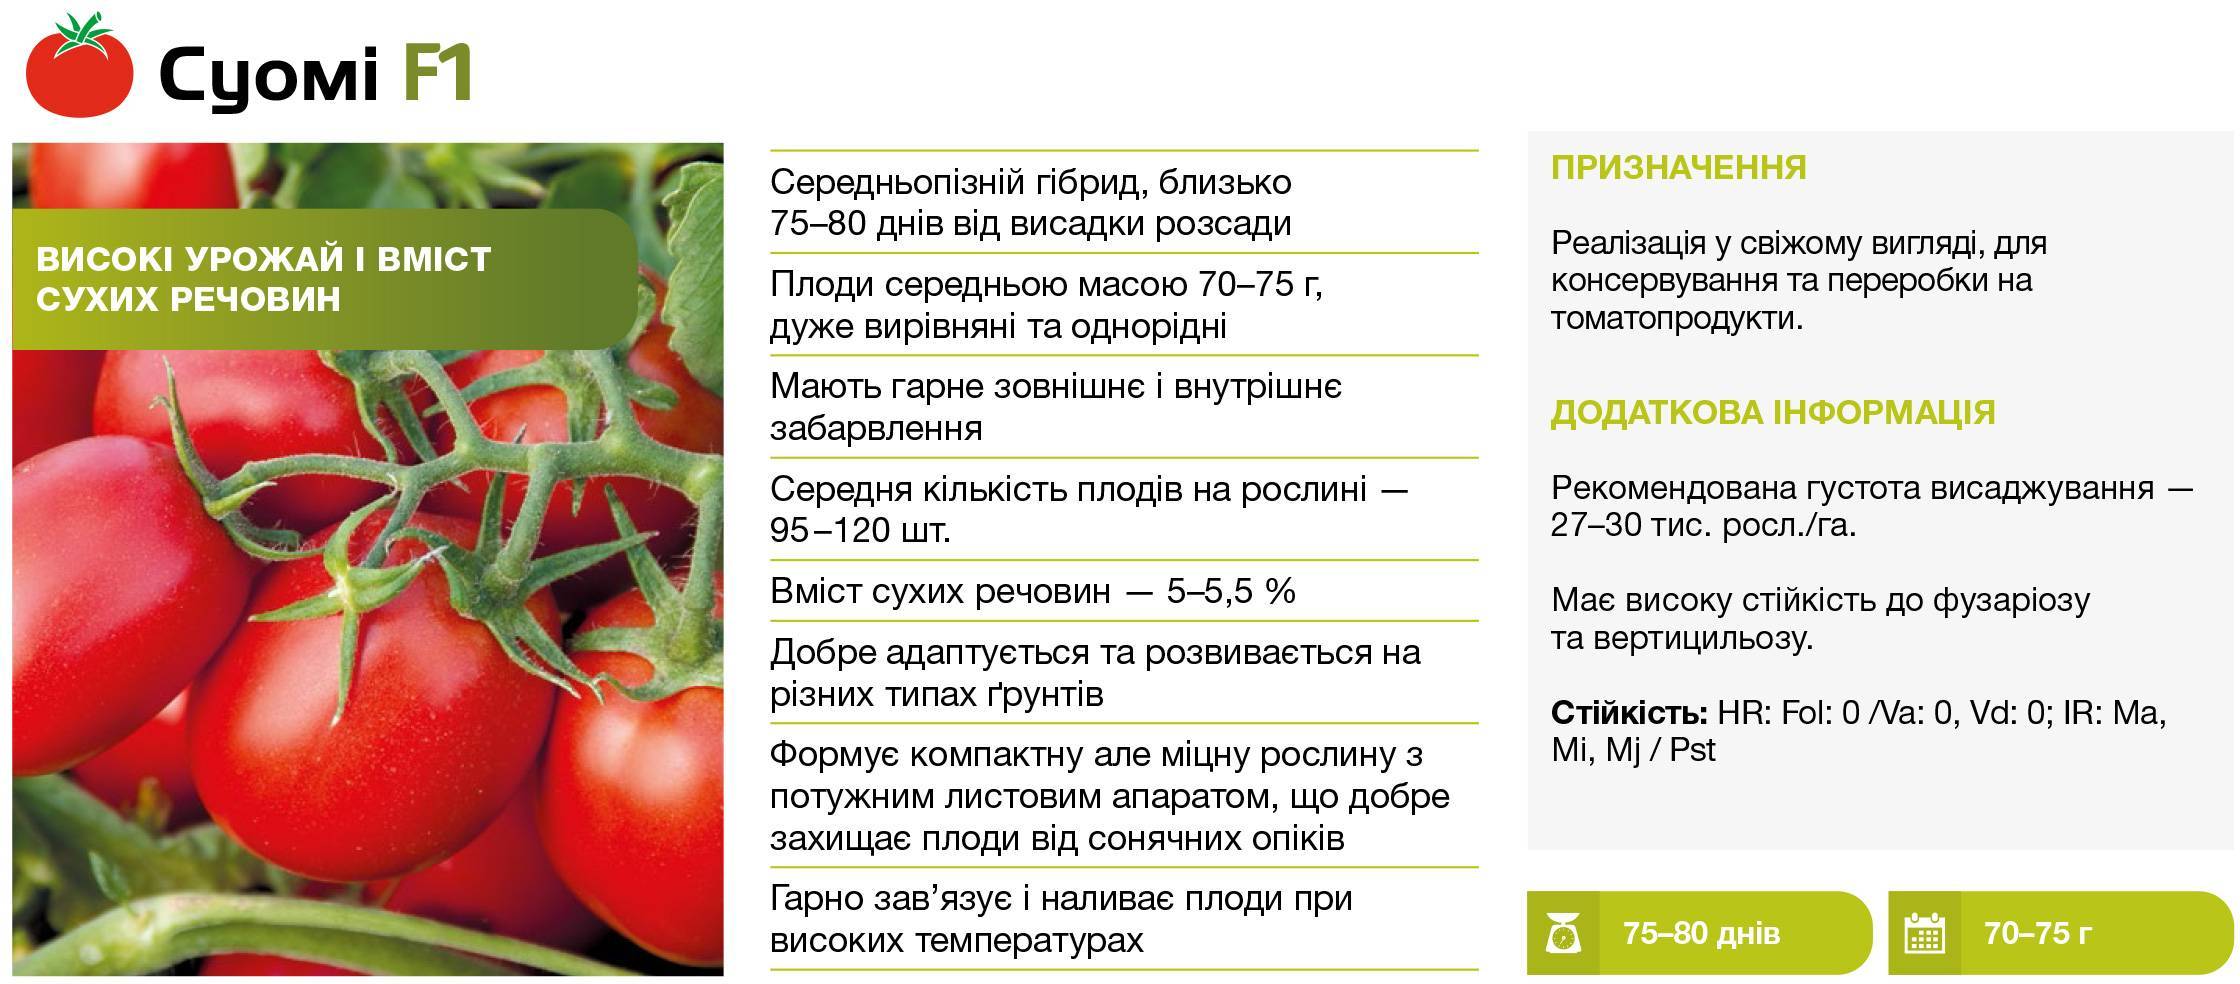 Описание томата Яна и выращивание детерминантного сорта